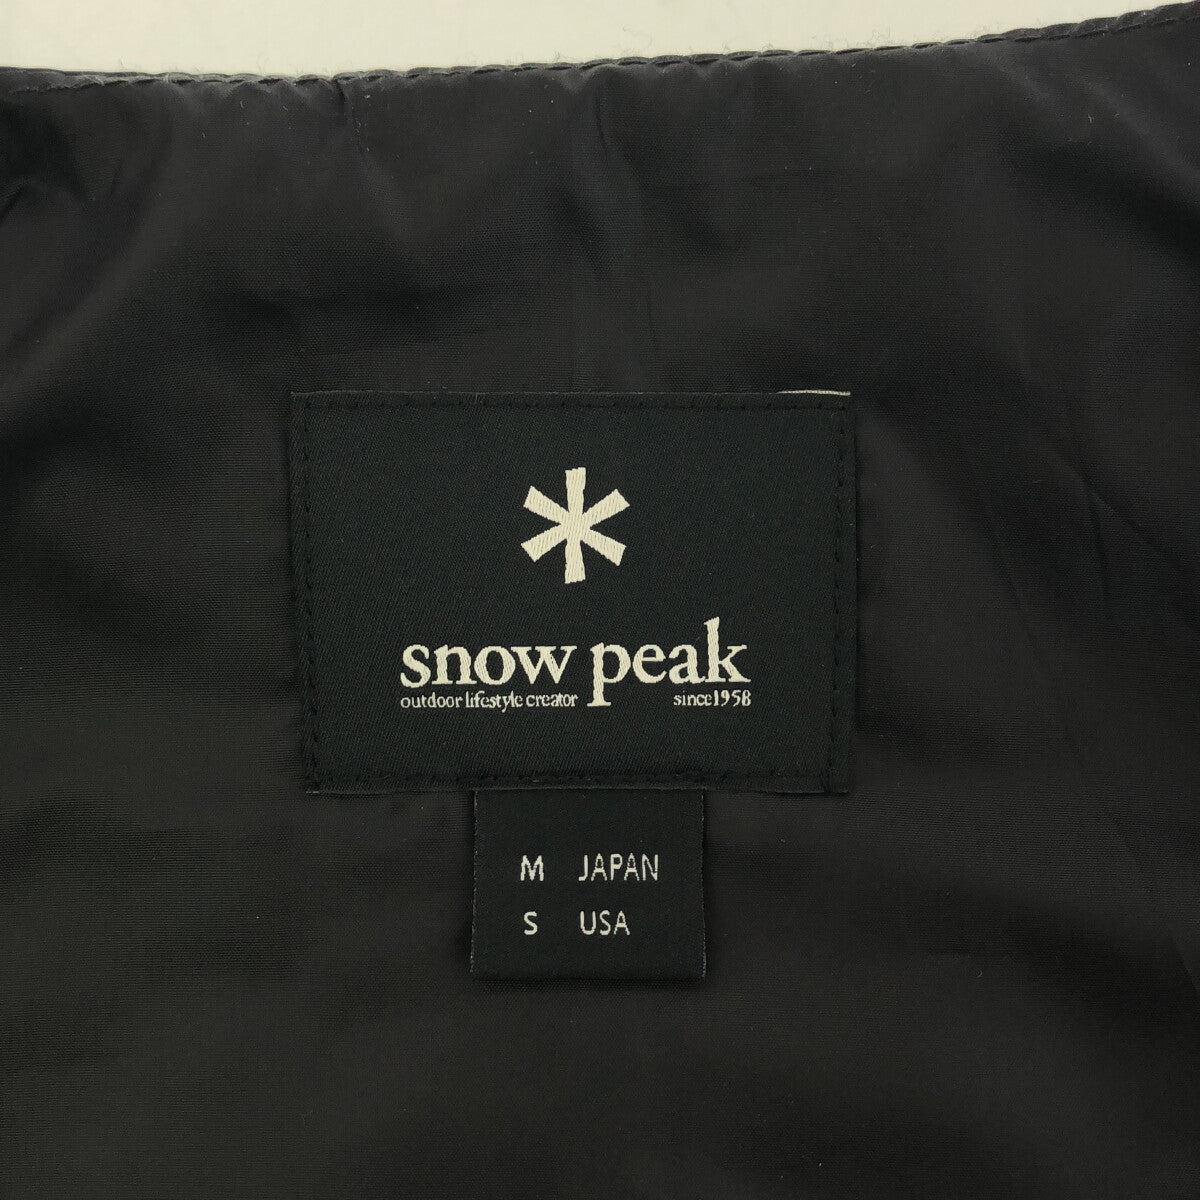 SNOW PEAK / スノーピーク | キルティング ダウンベスト | M | メンズ 